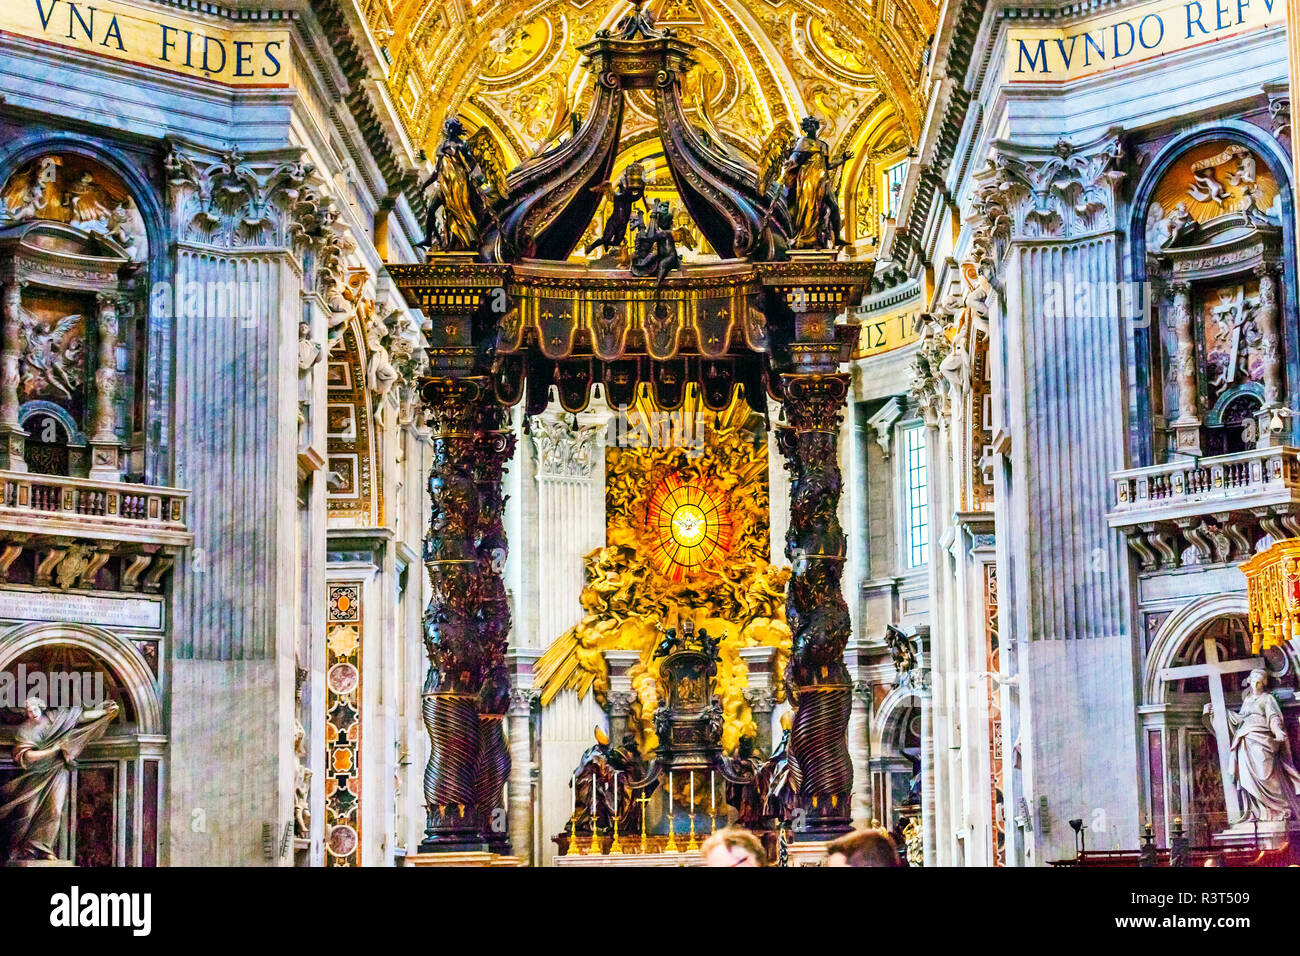 La basilique Saint Pierre Bernini Baldacchino Esprit Saint Colombe, Vatican, Rome, Italie. Baldacchino Canopy construit en 1600 sur l'autel et la tombe de Saint Pierre Banque D'Images